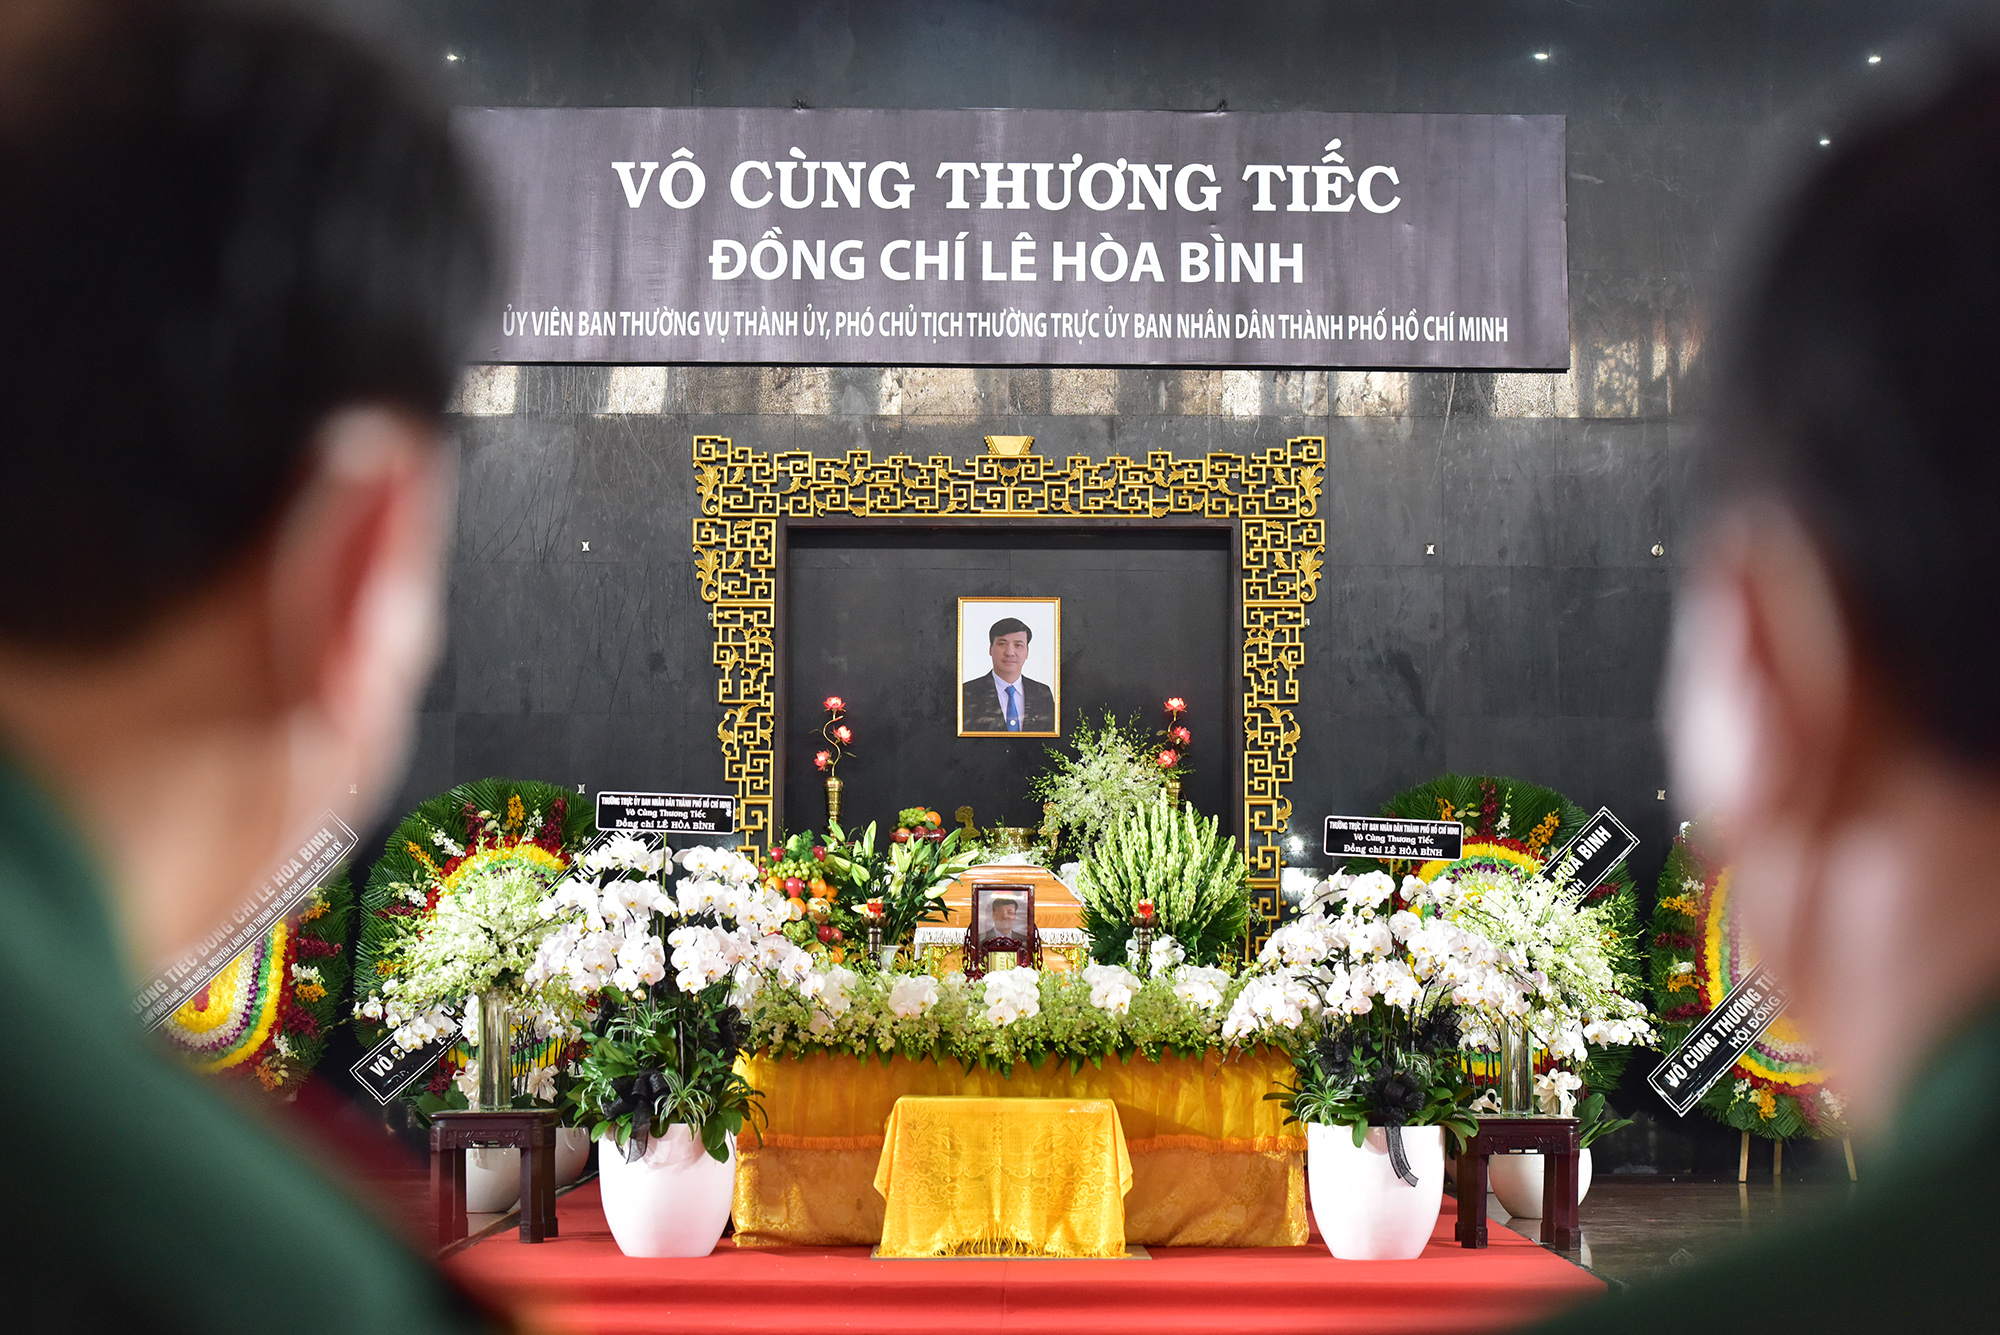 13h hôm nay (31/3), lễ viếng Phó Chủ tịch thường trực UBND TP.HCM Lê Hoà Bình được tổ chức tại Nhà tang lễ Quốc gia phía Nam (số 5 Phạm Ngũ Lão, phường 3, quận Gò Vấp, TP.HCM).